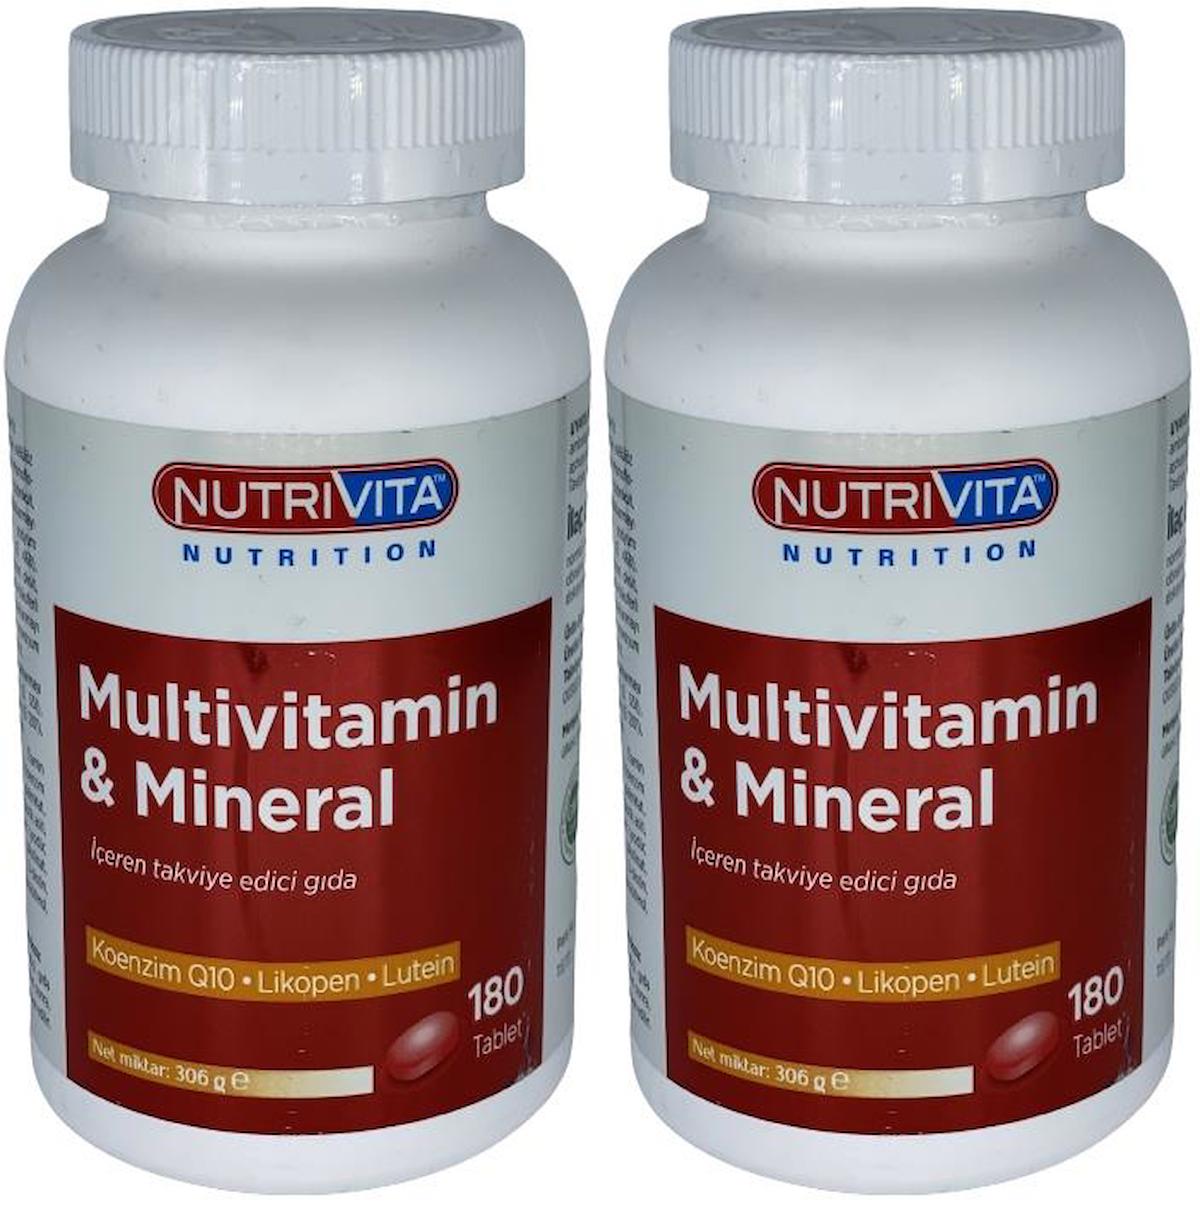 Nutrivita Nutrition Sade Unisex Vitamin 2x180 Tablet